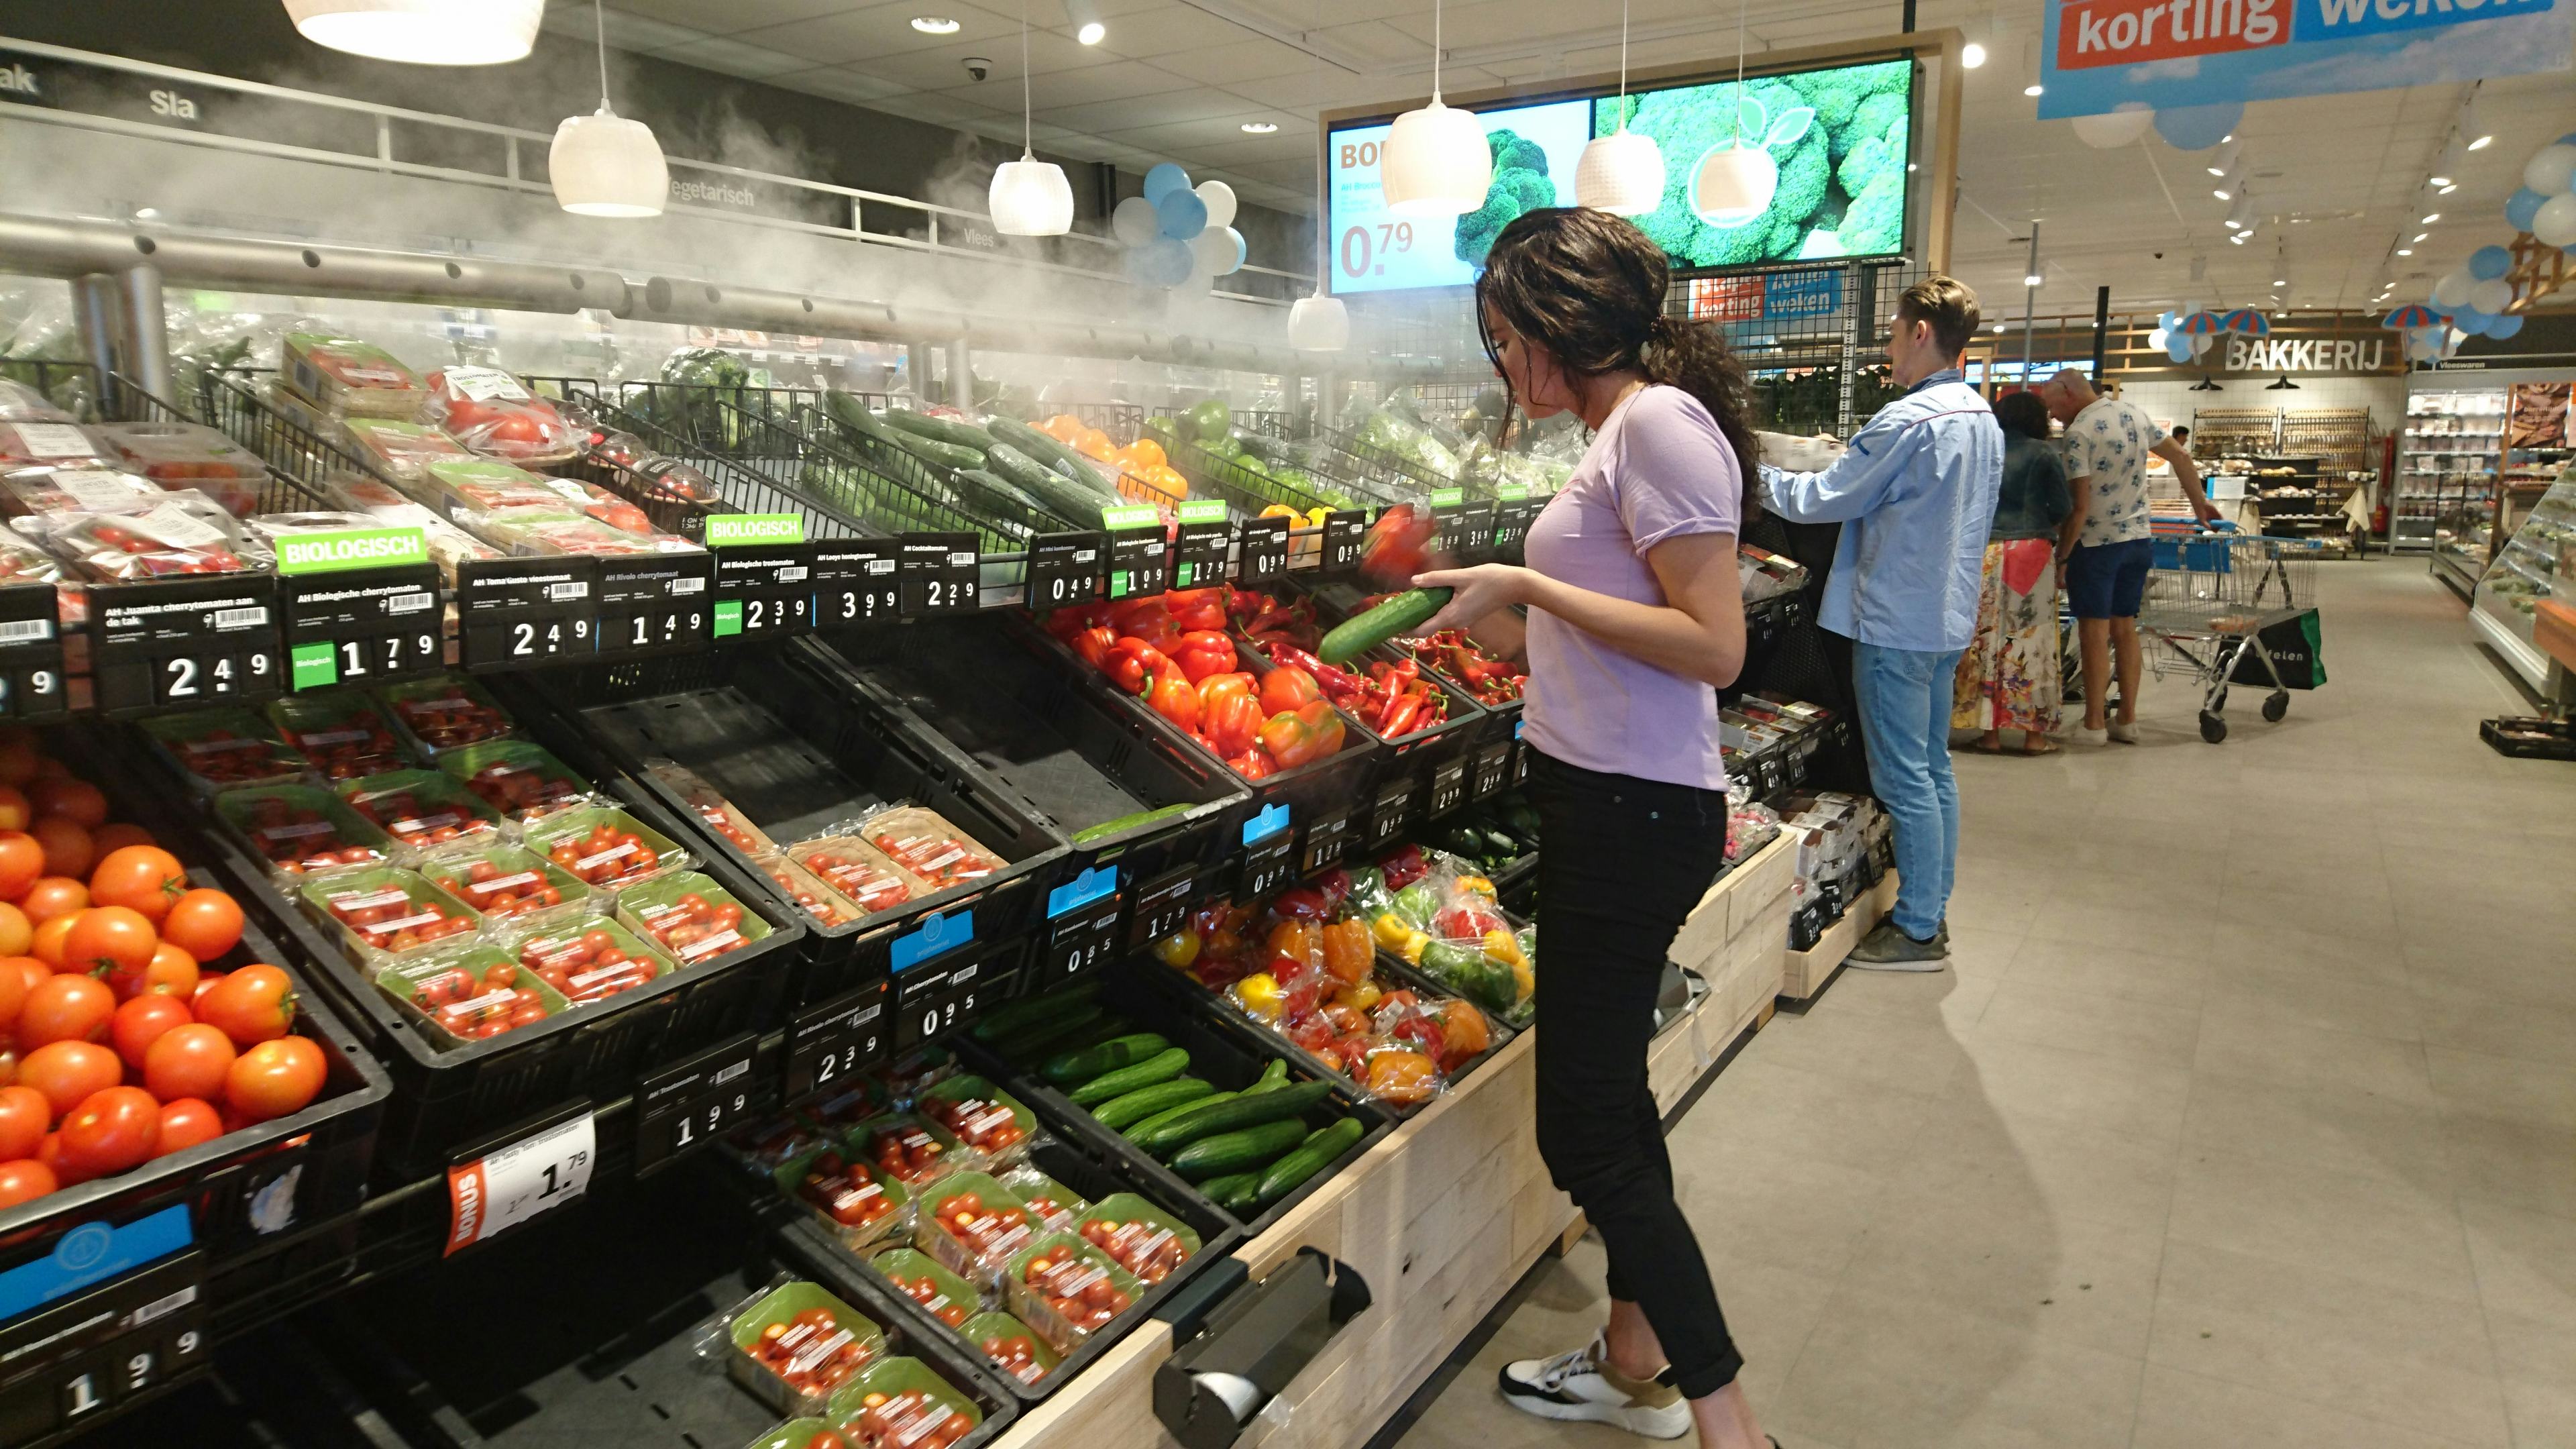 Komkommers in het supermarktschap. In 2018 gingen er 128,8 miljoen komkommers over de toonbank. Foto: Foodmagazine.